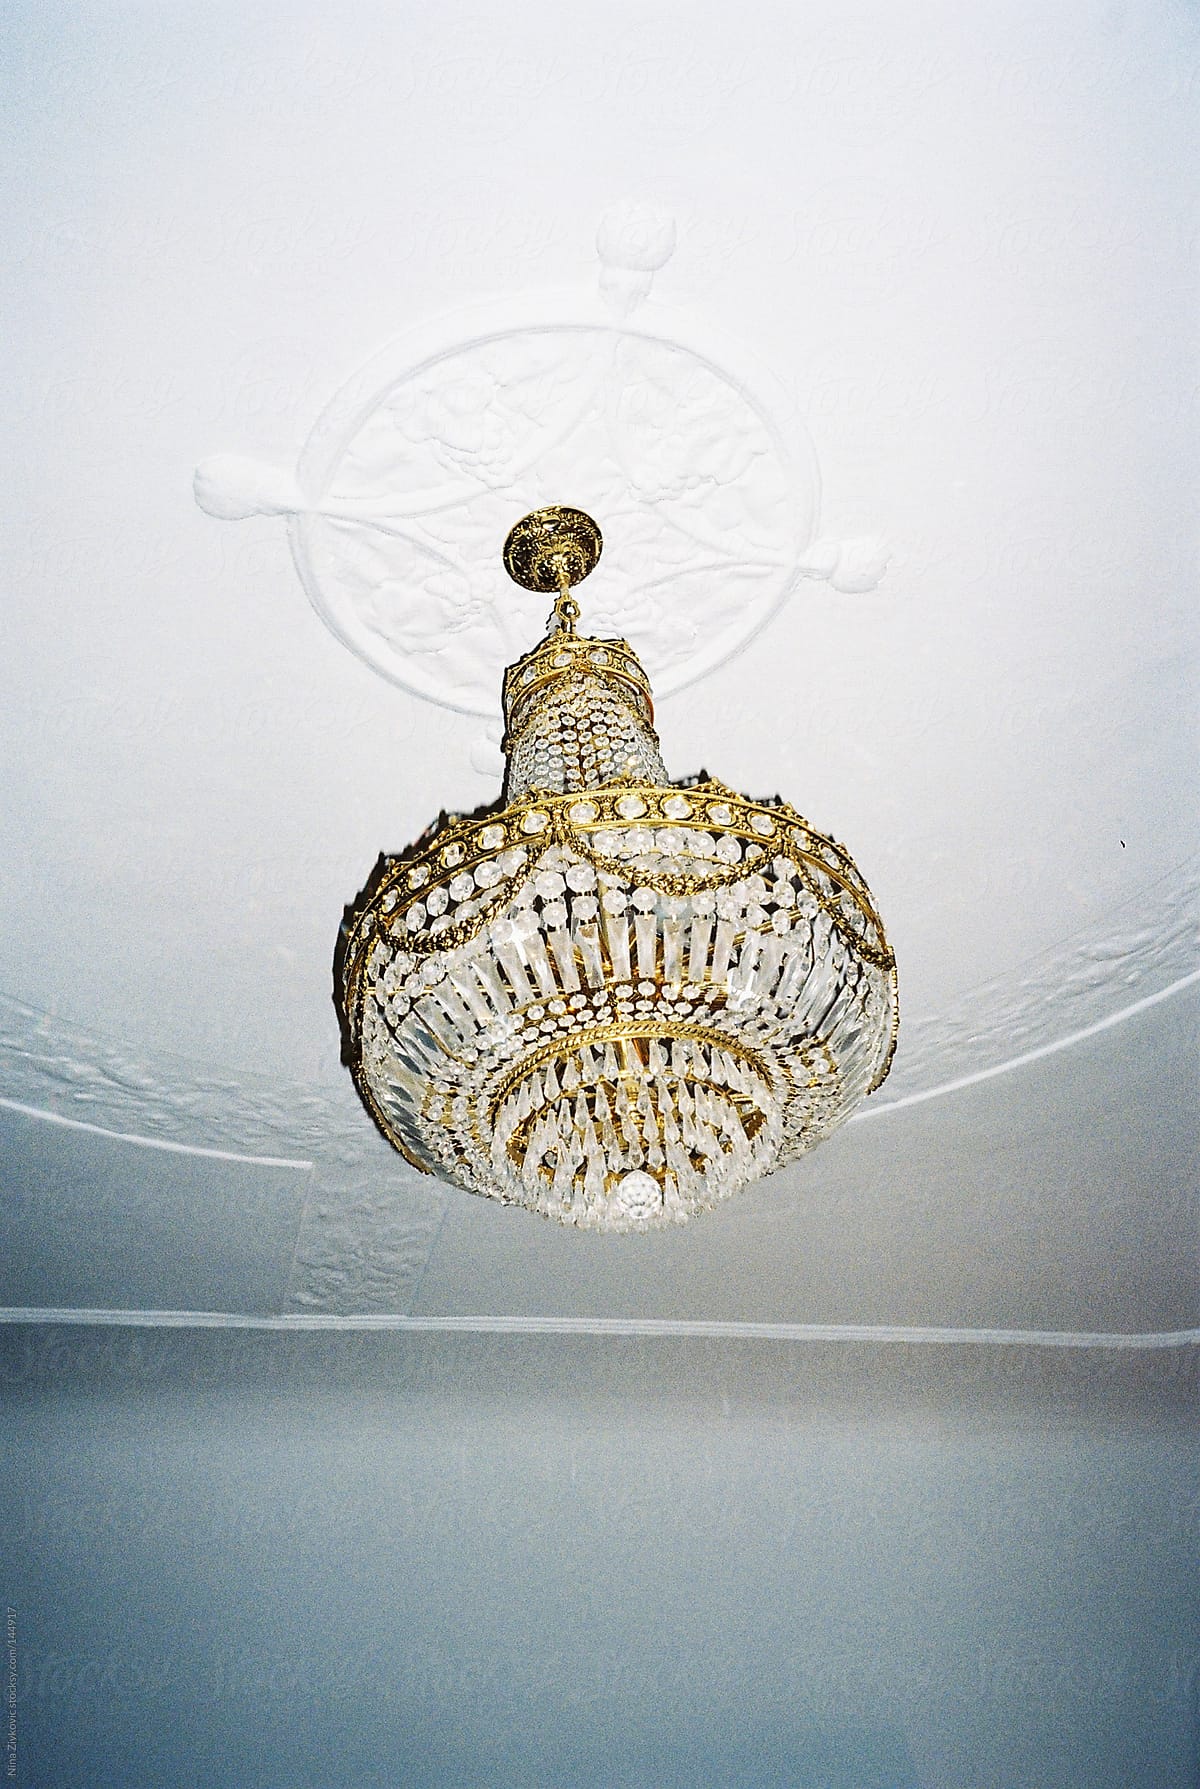 A beautiful chandelier.